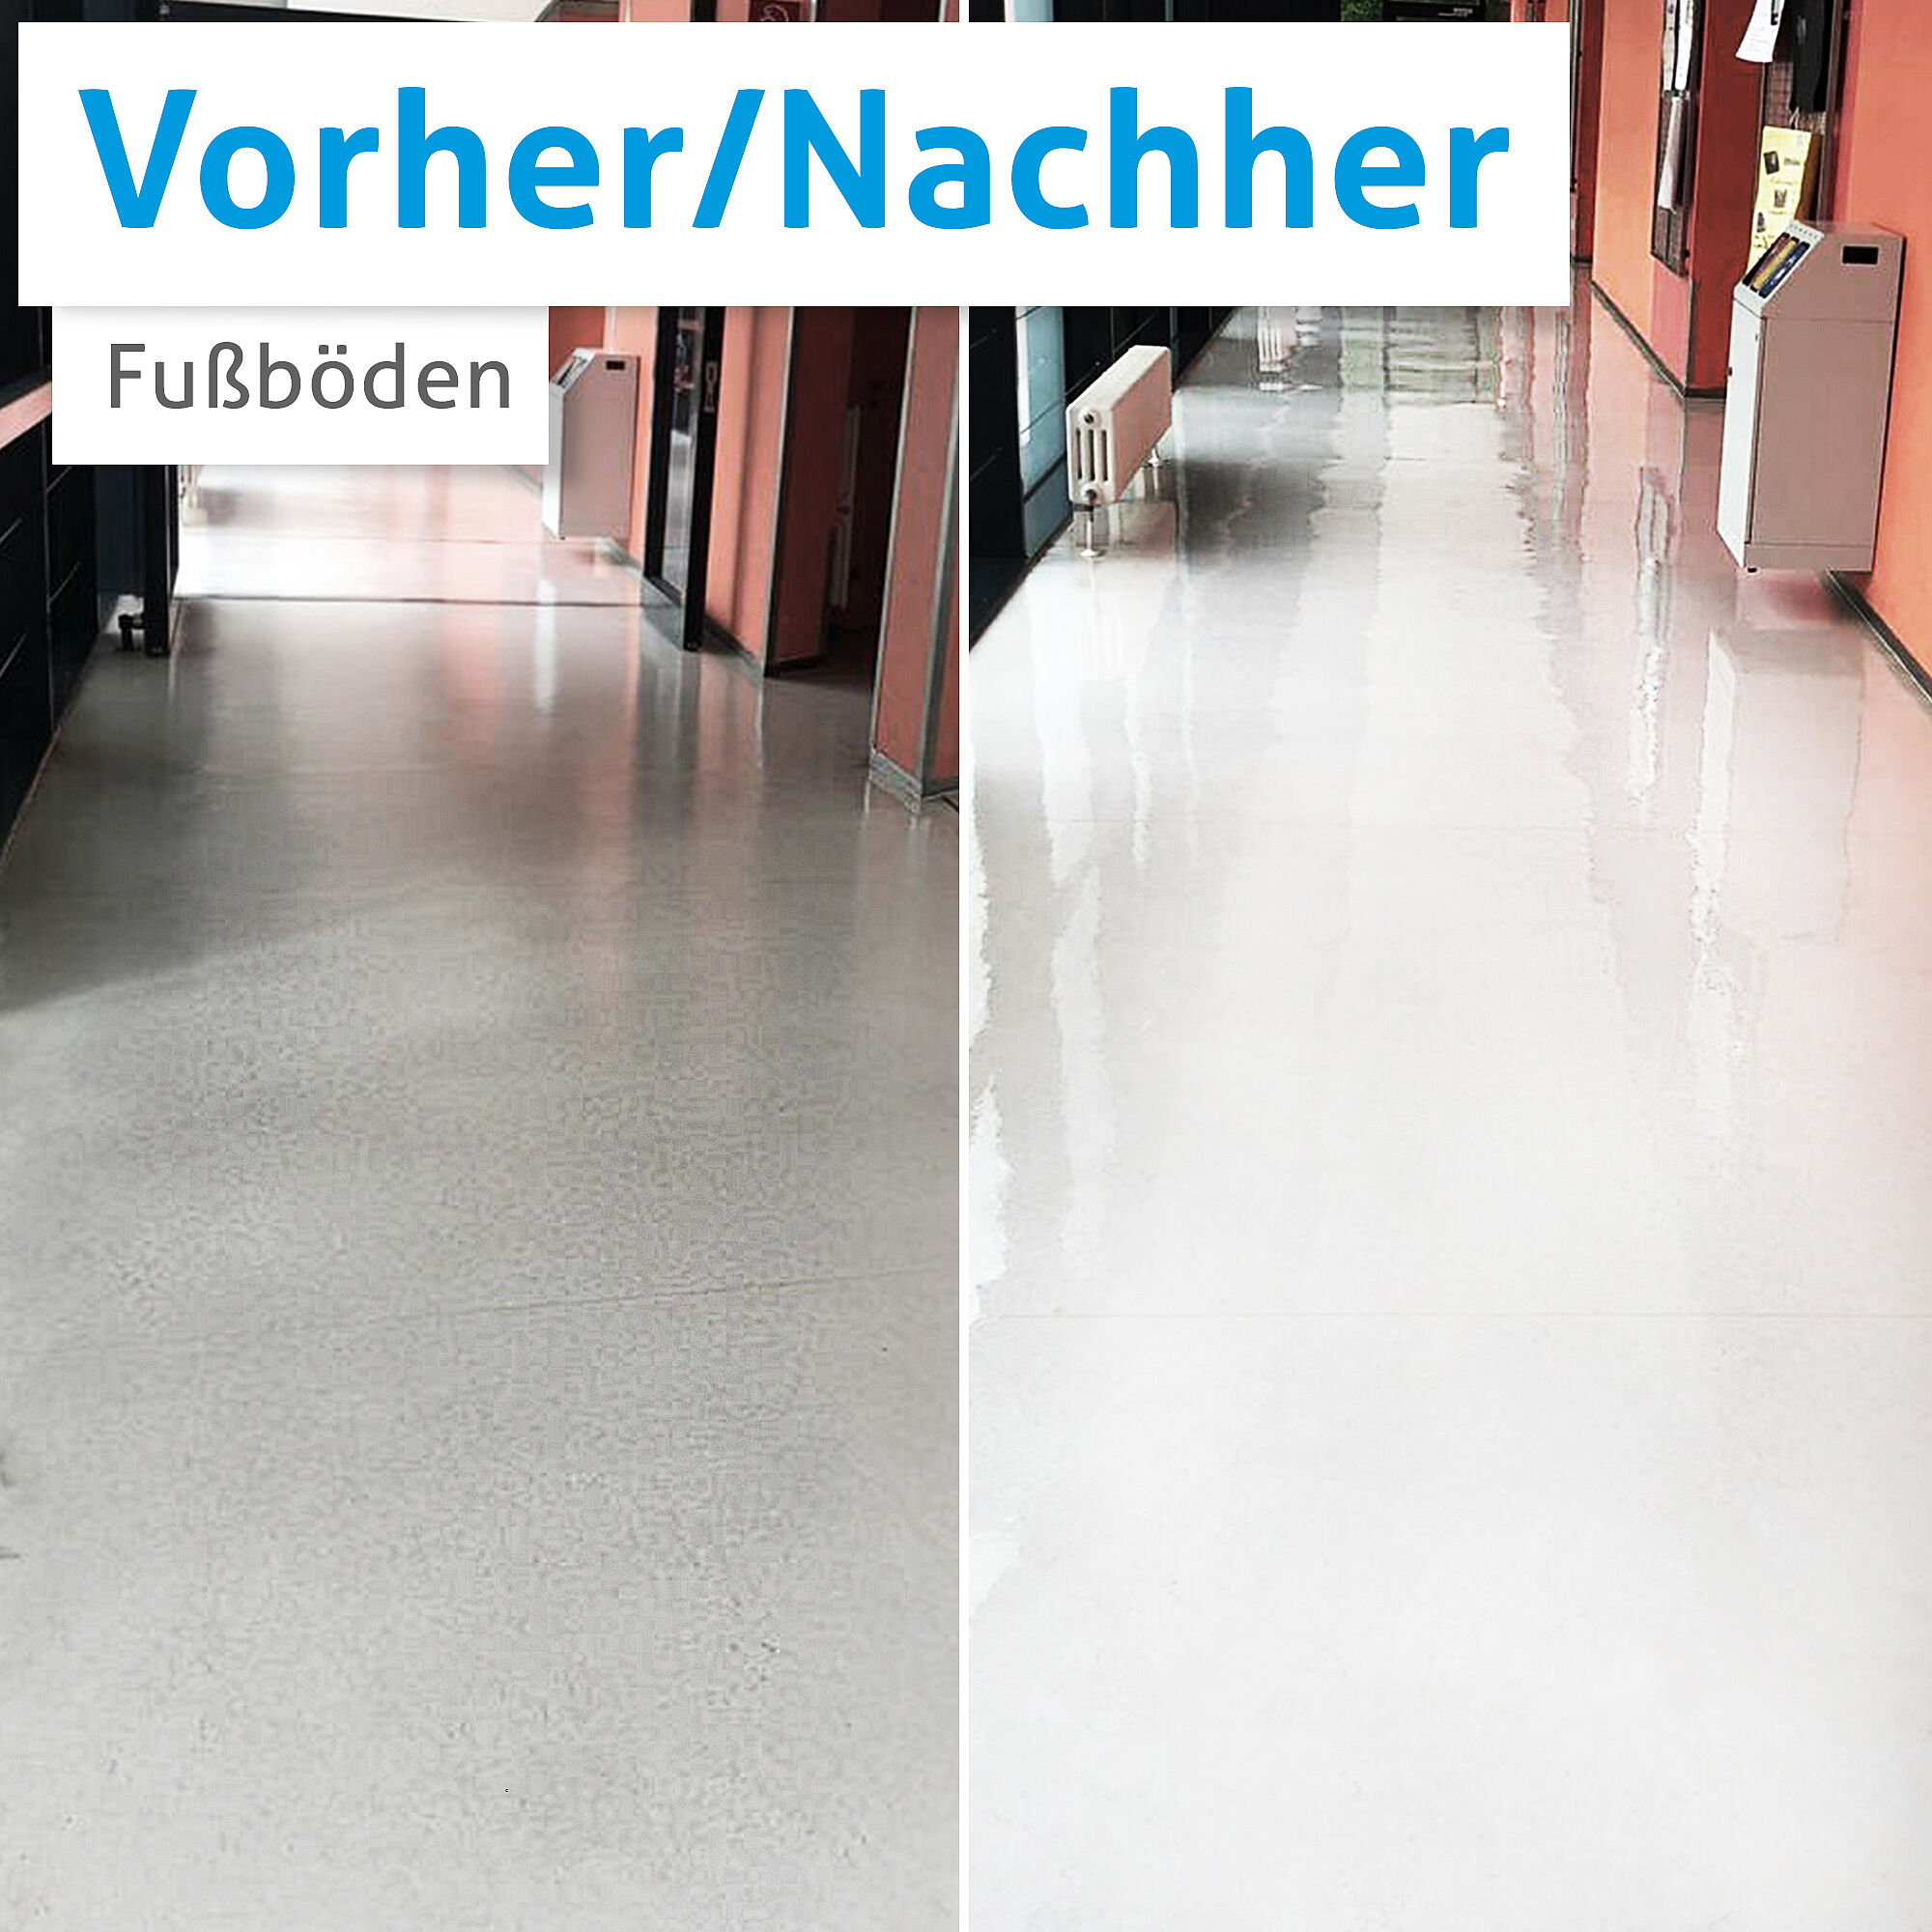 RAHMER Dienstleistungen macht eiskalt sauber - zum Beispiel diesen Fußboden in Nürnberg.